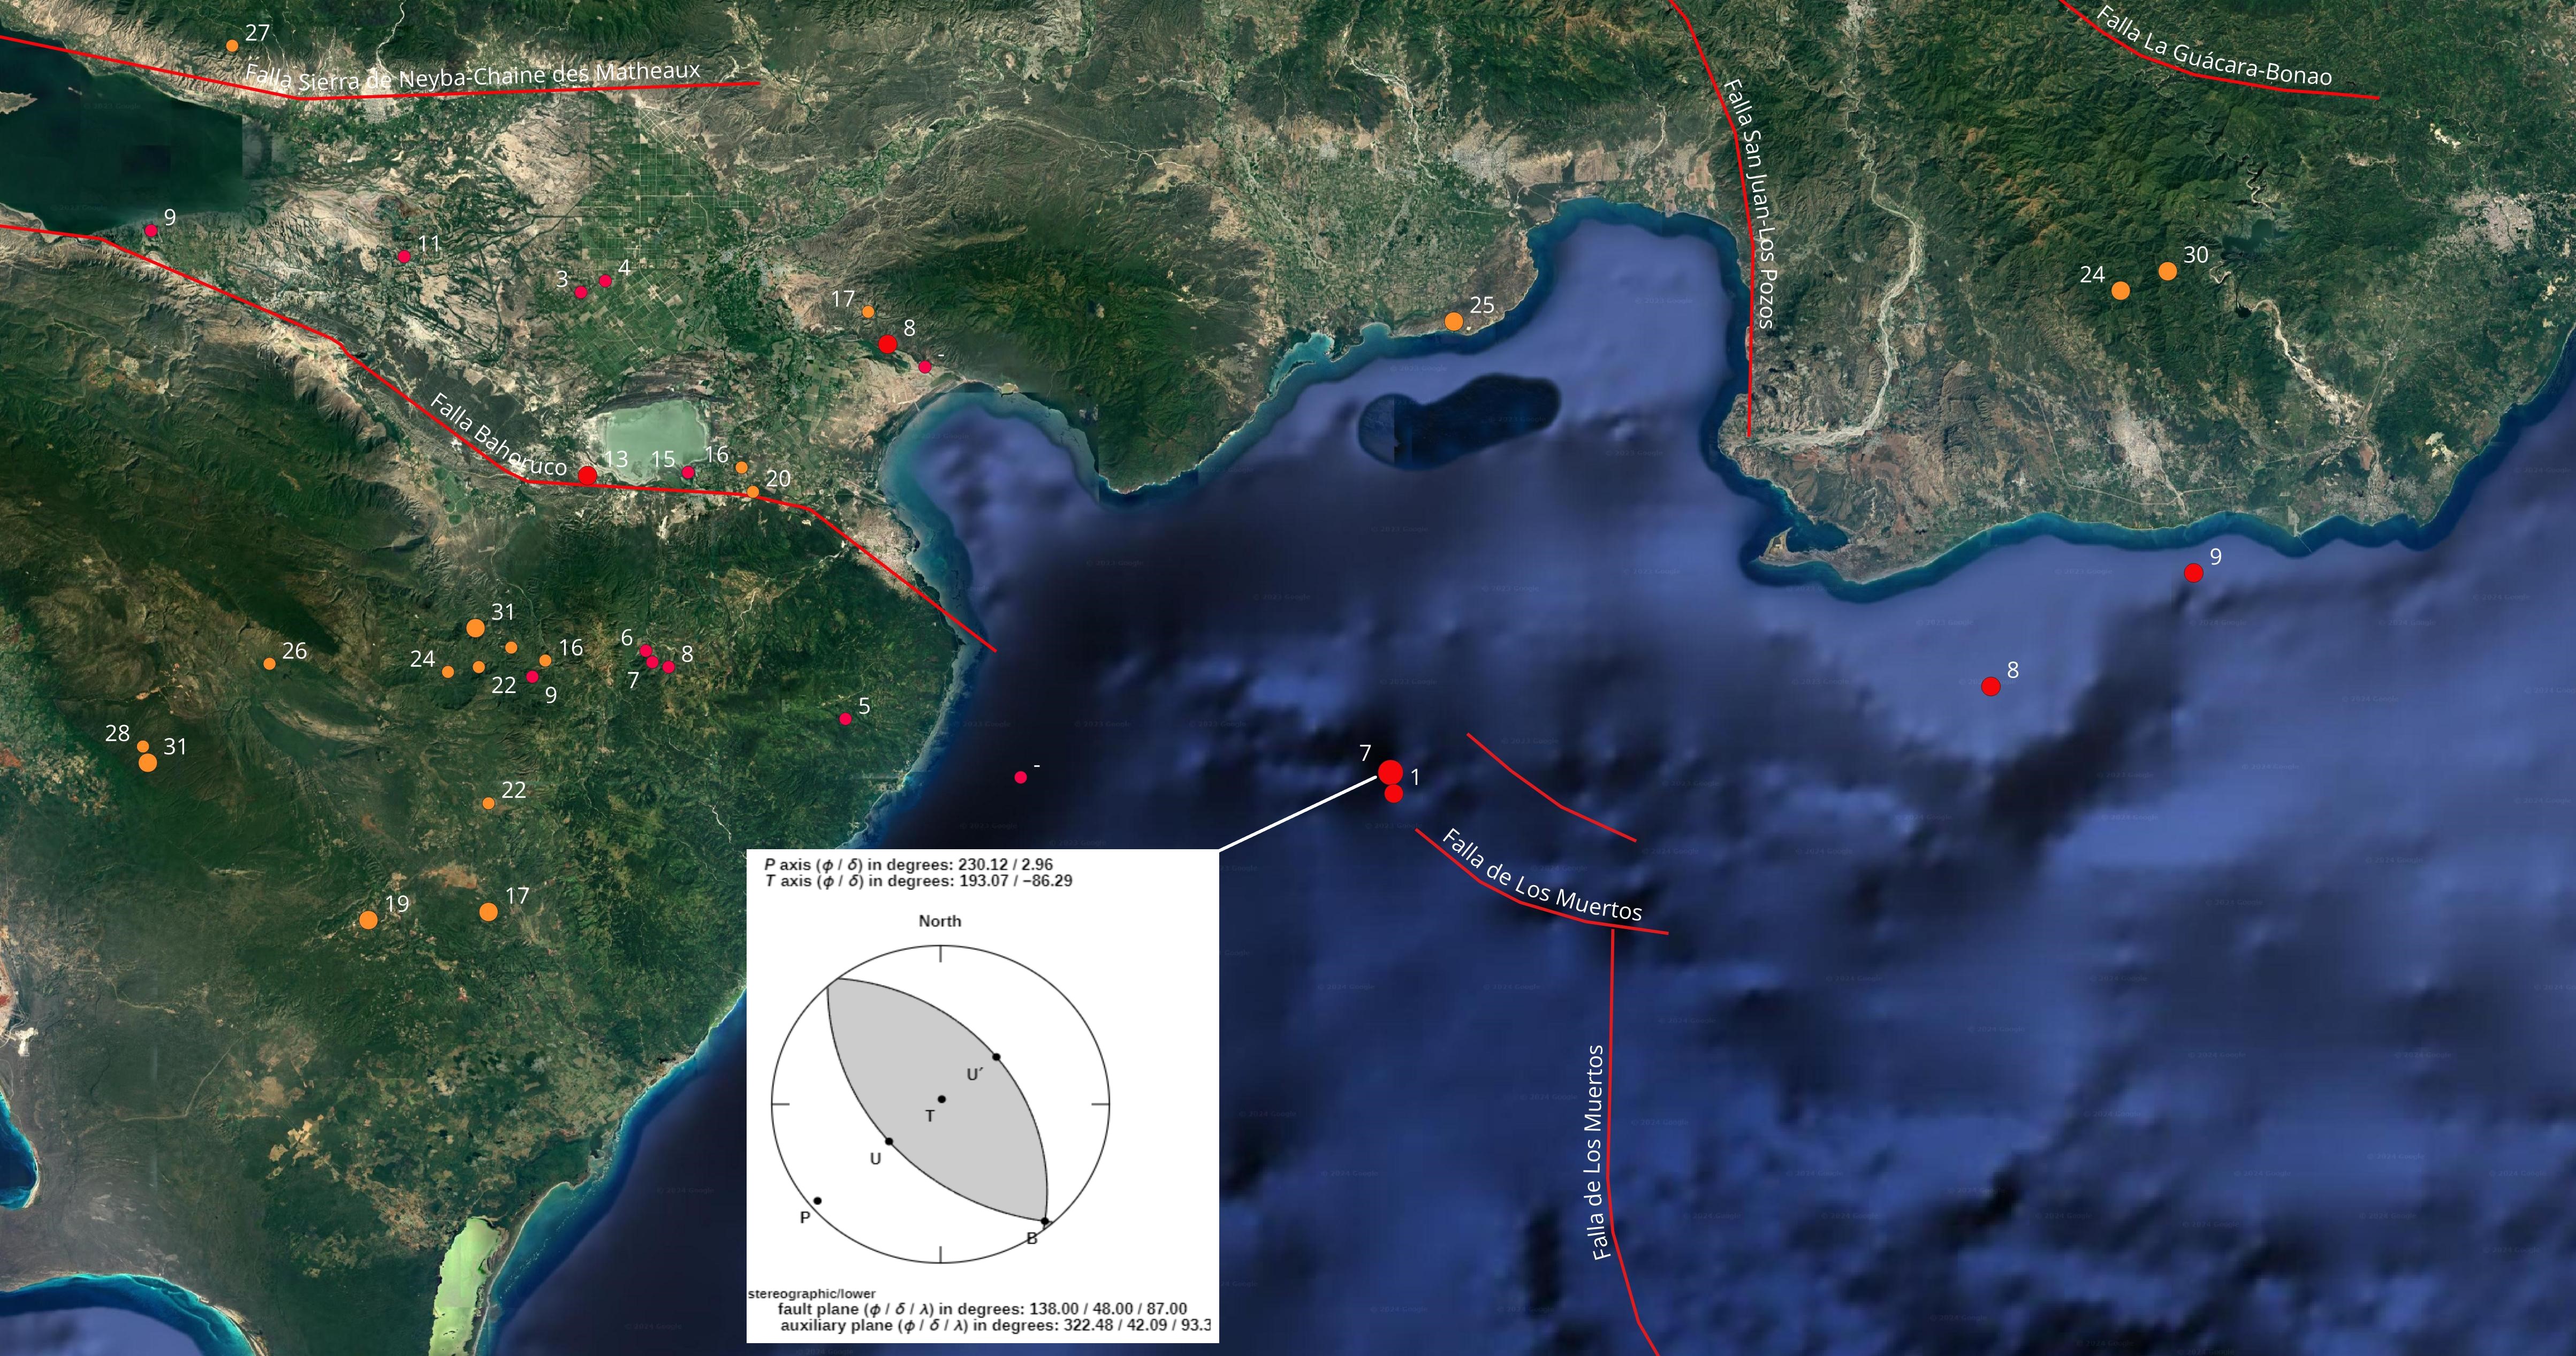 Figura 5, imagen parcial del sur de la isla mostrando en recuadro el mecanismo focal del temblor Ml 3.1 de fecha 12 de febrero al este de Barahona. Se indican las profundidades de los diferentes temblores de la region en km, al lado de sus respectivos epicentros.